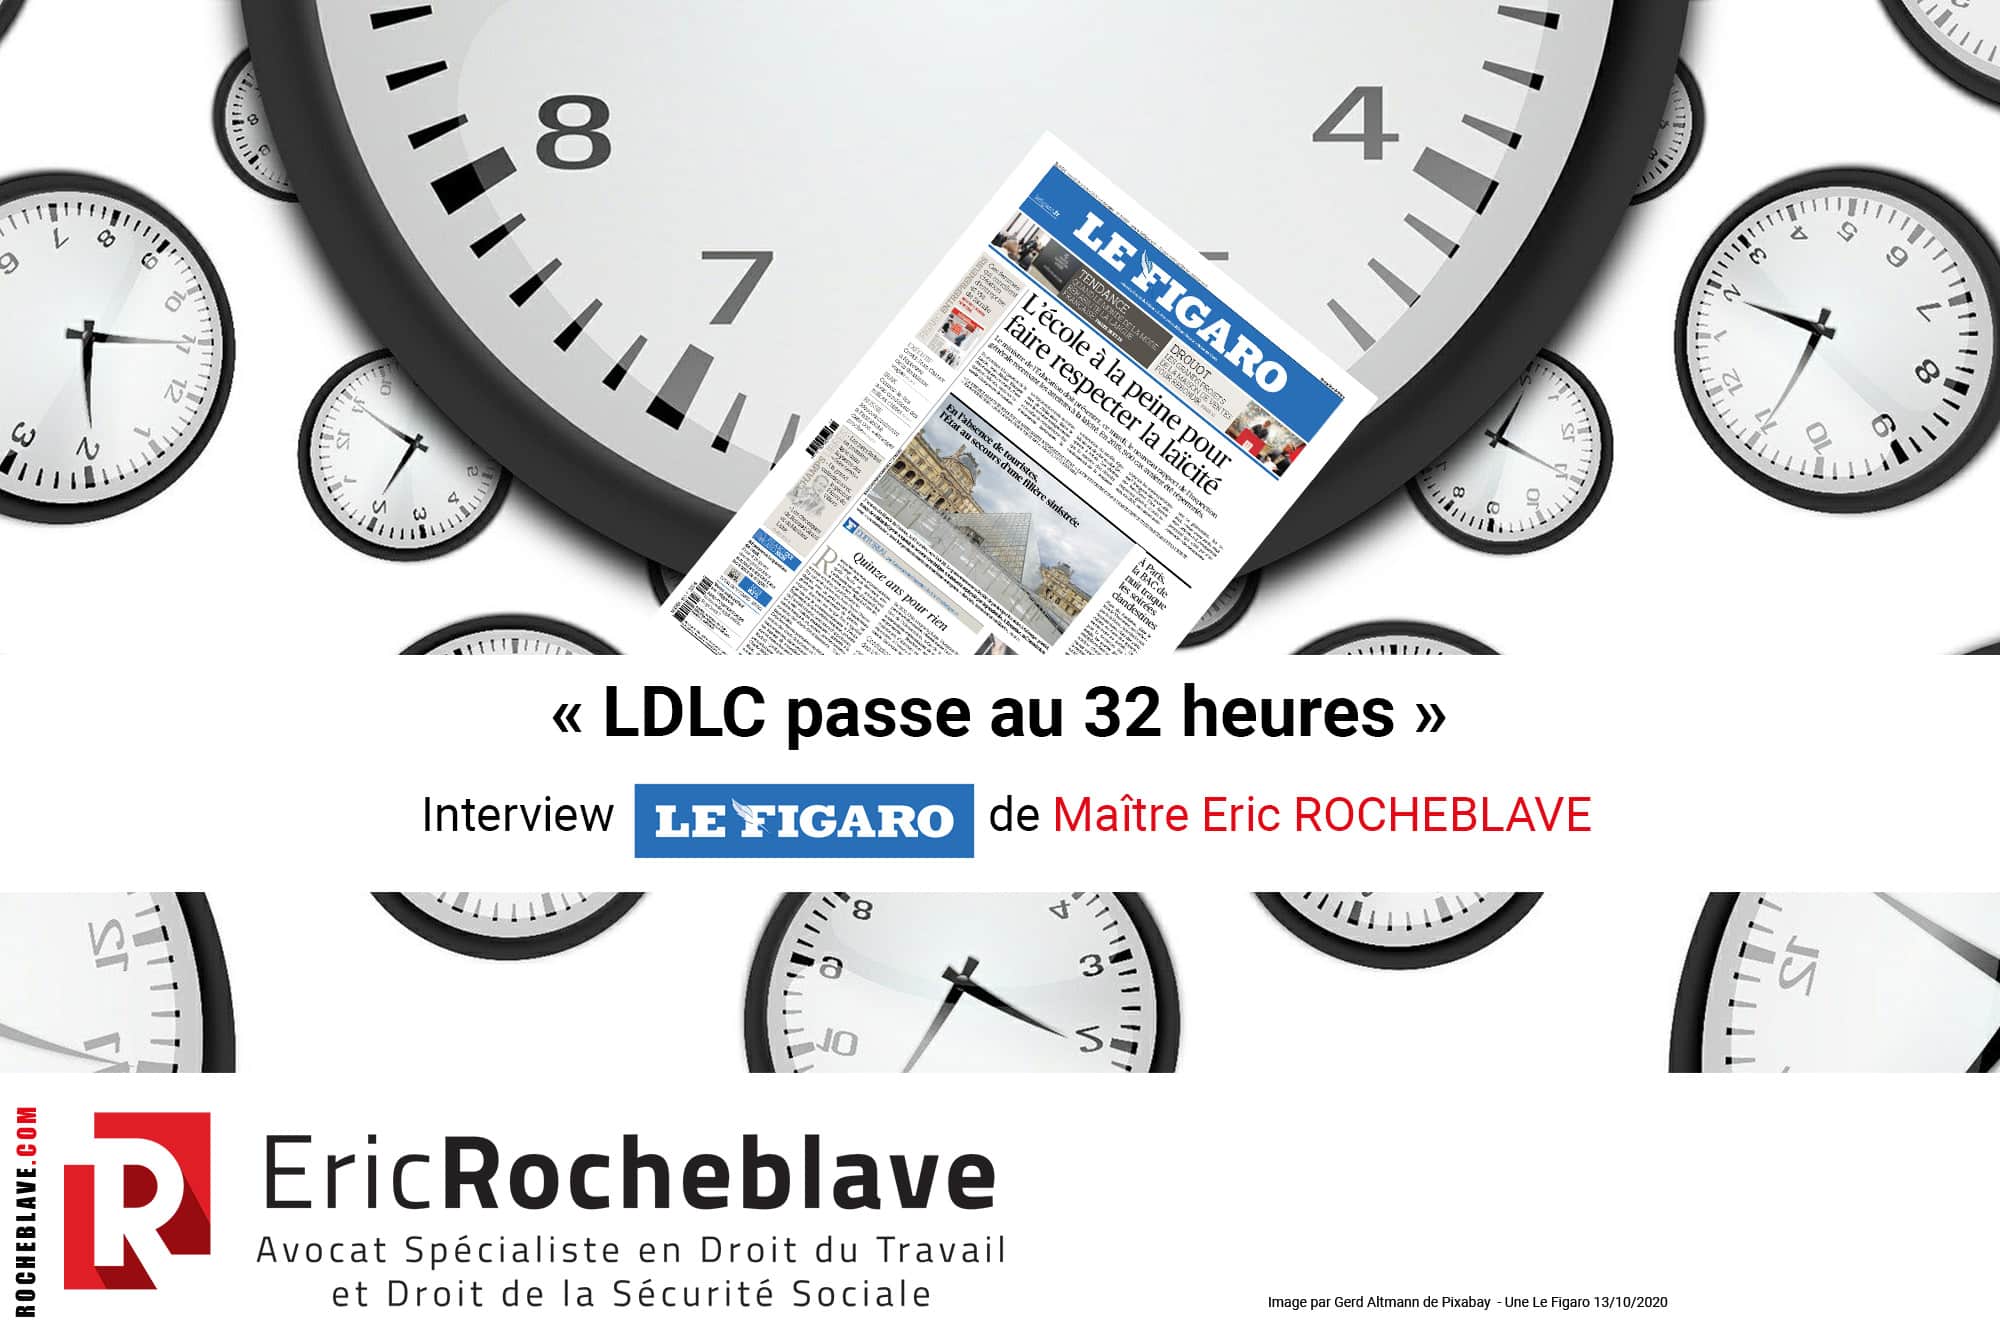 « LDLC passe au 32 heures » Interview Le Figaro de Maître Eric ROCHEBLAVE